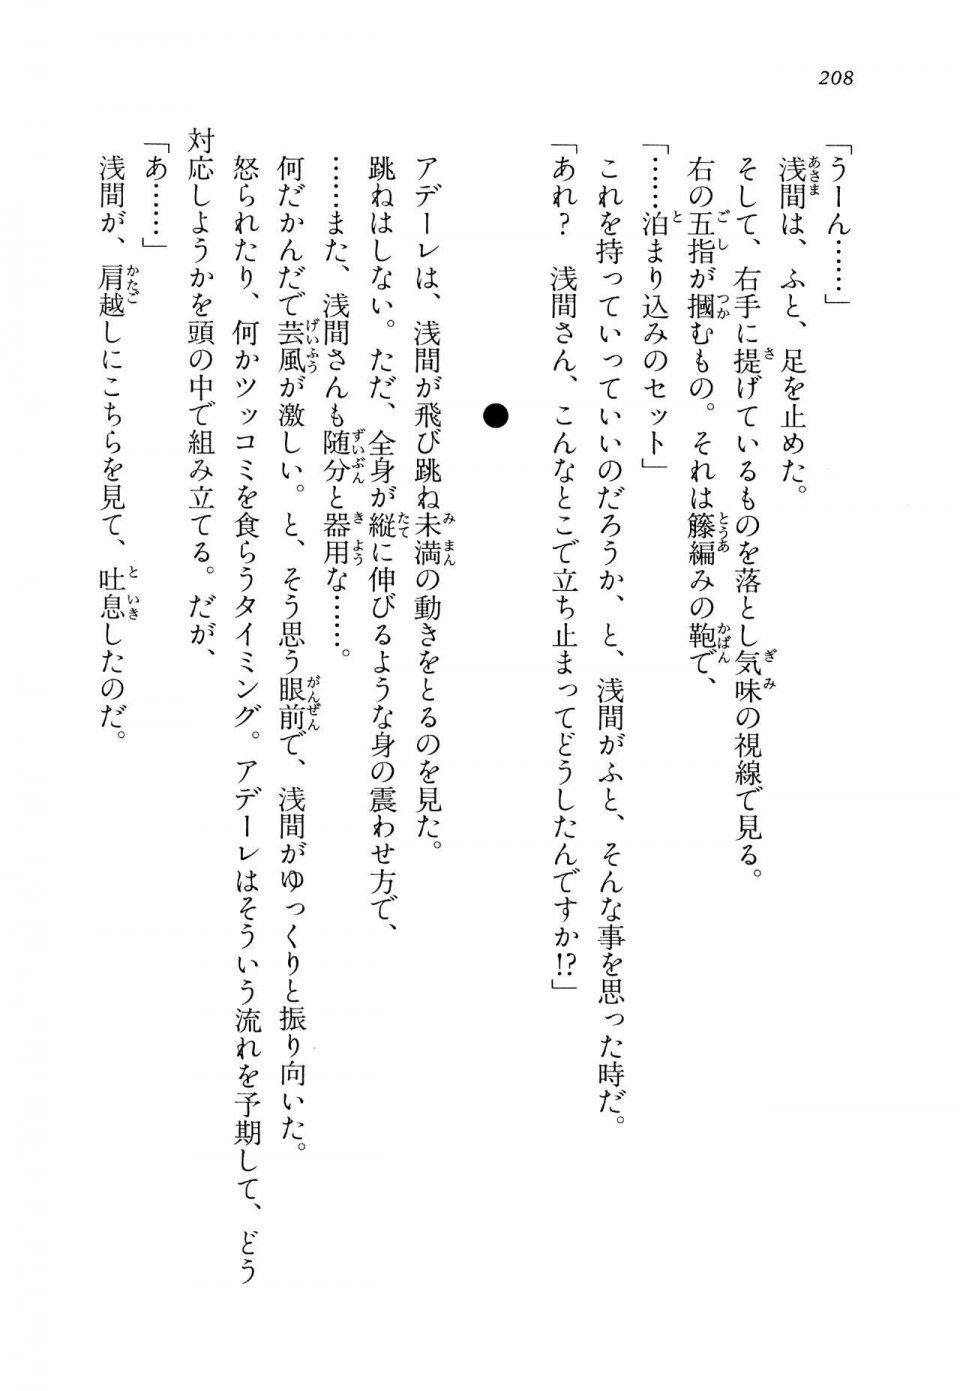 Kyoukai Senjou no Horizon LN Vol 14(6B) - Photo #208